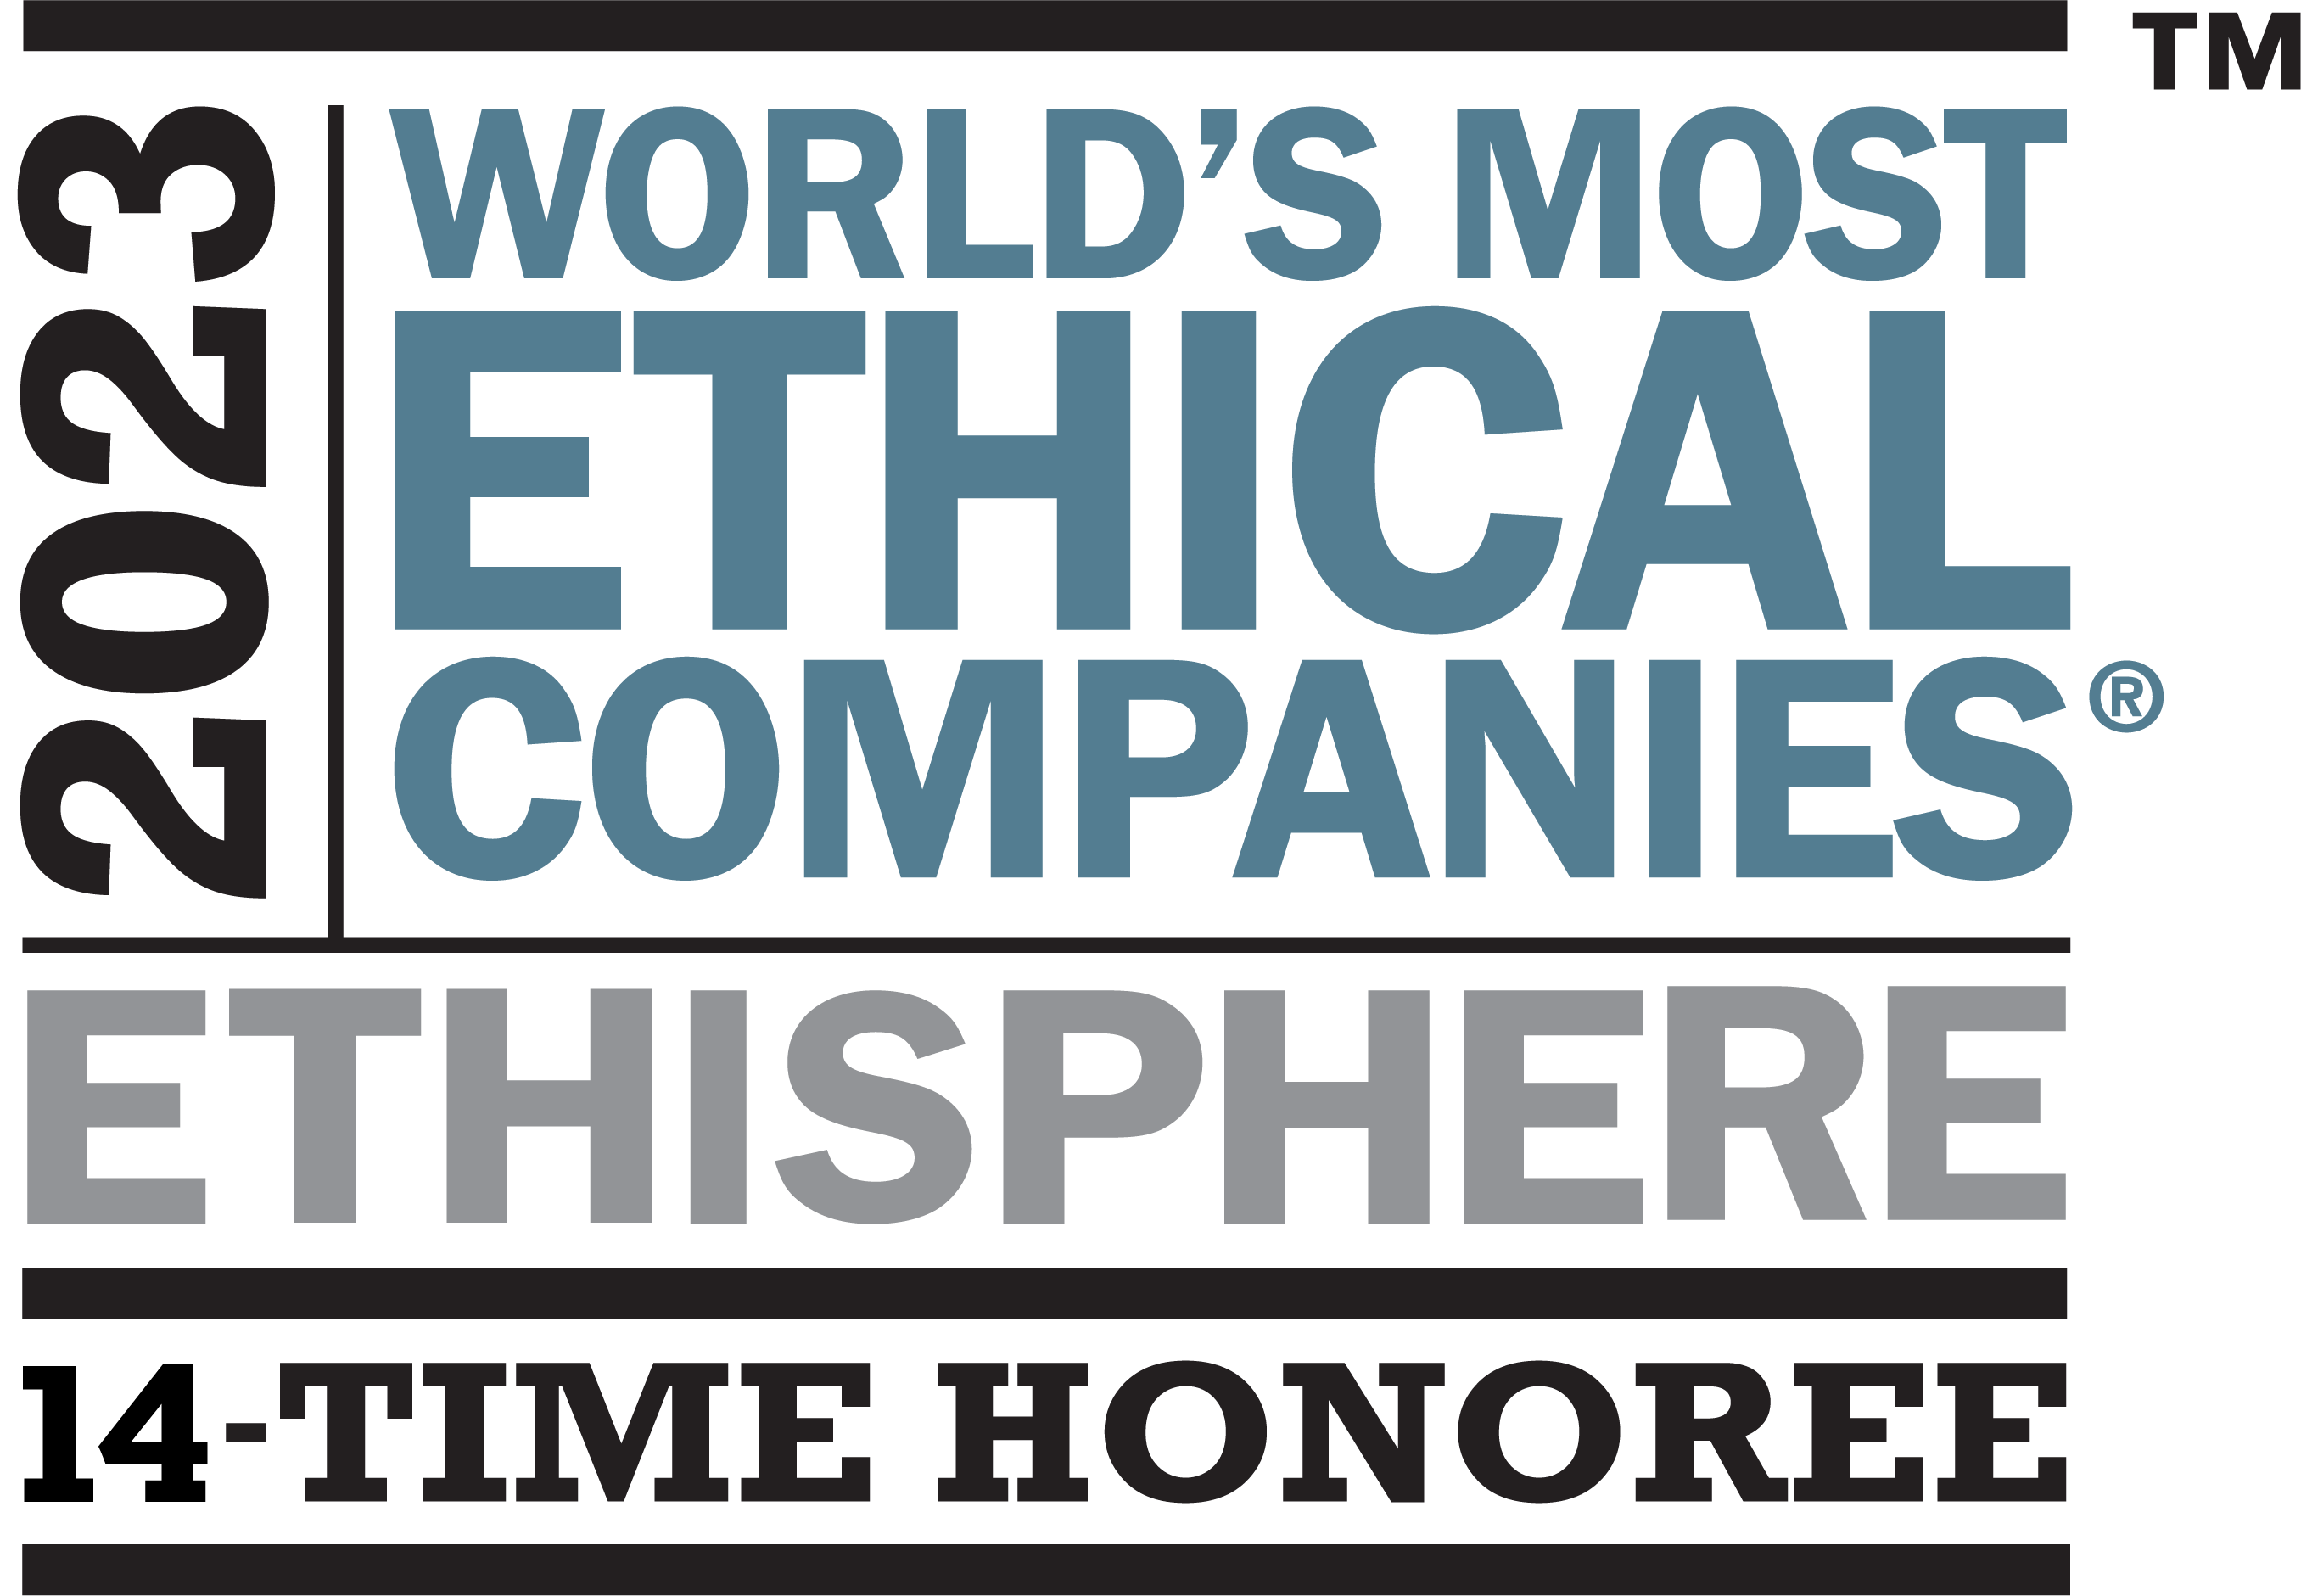 Ethisphere Ethical Company logo